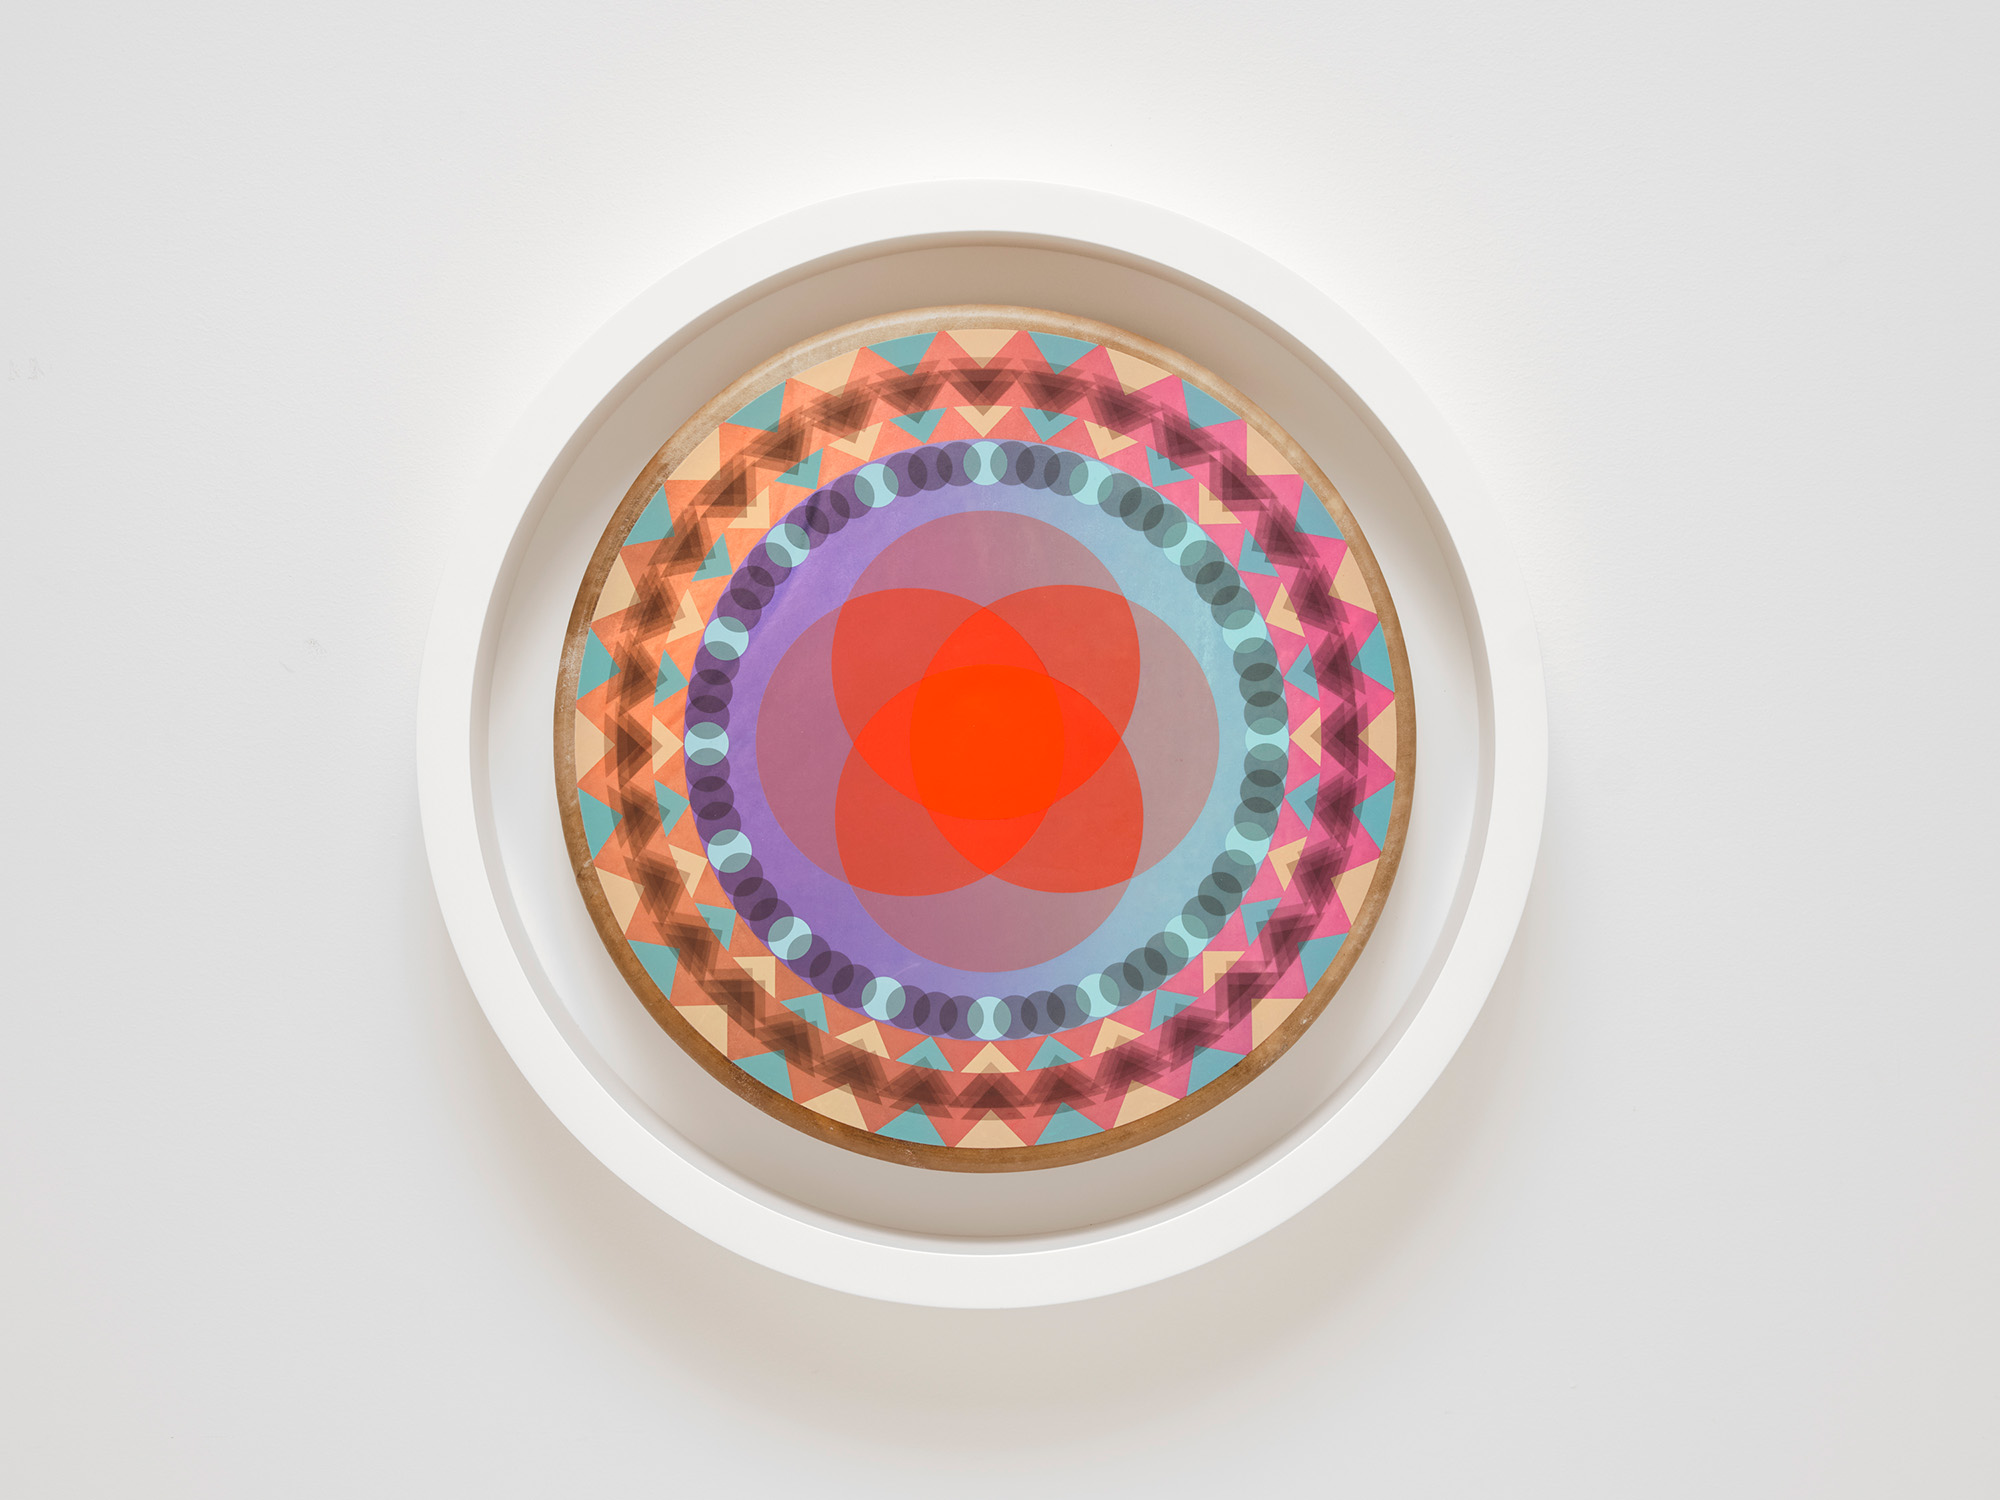 image of a circular art piece